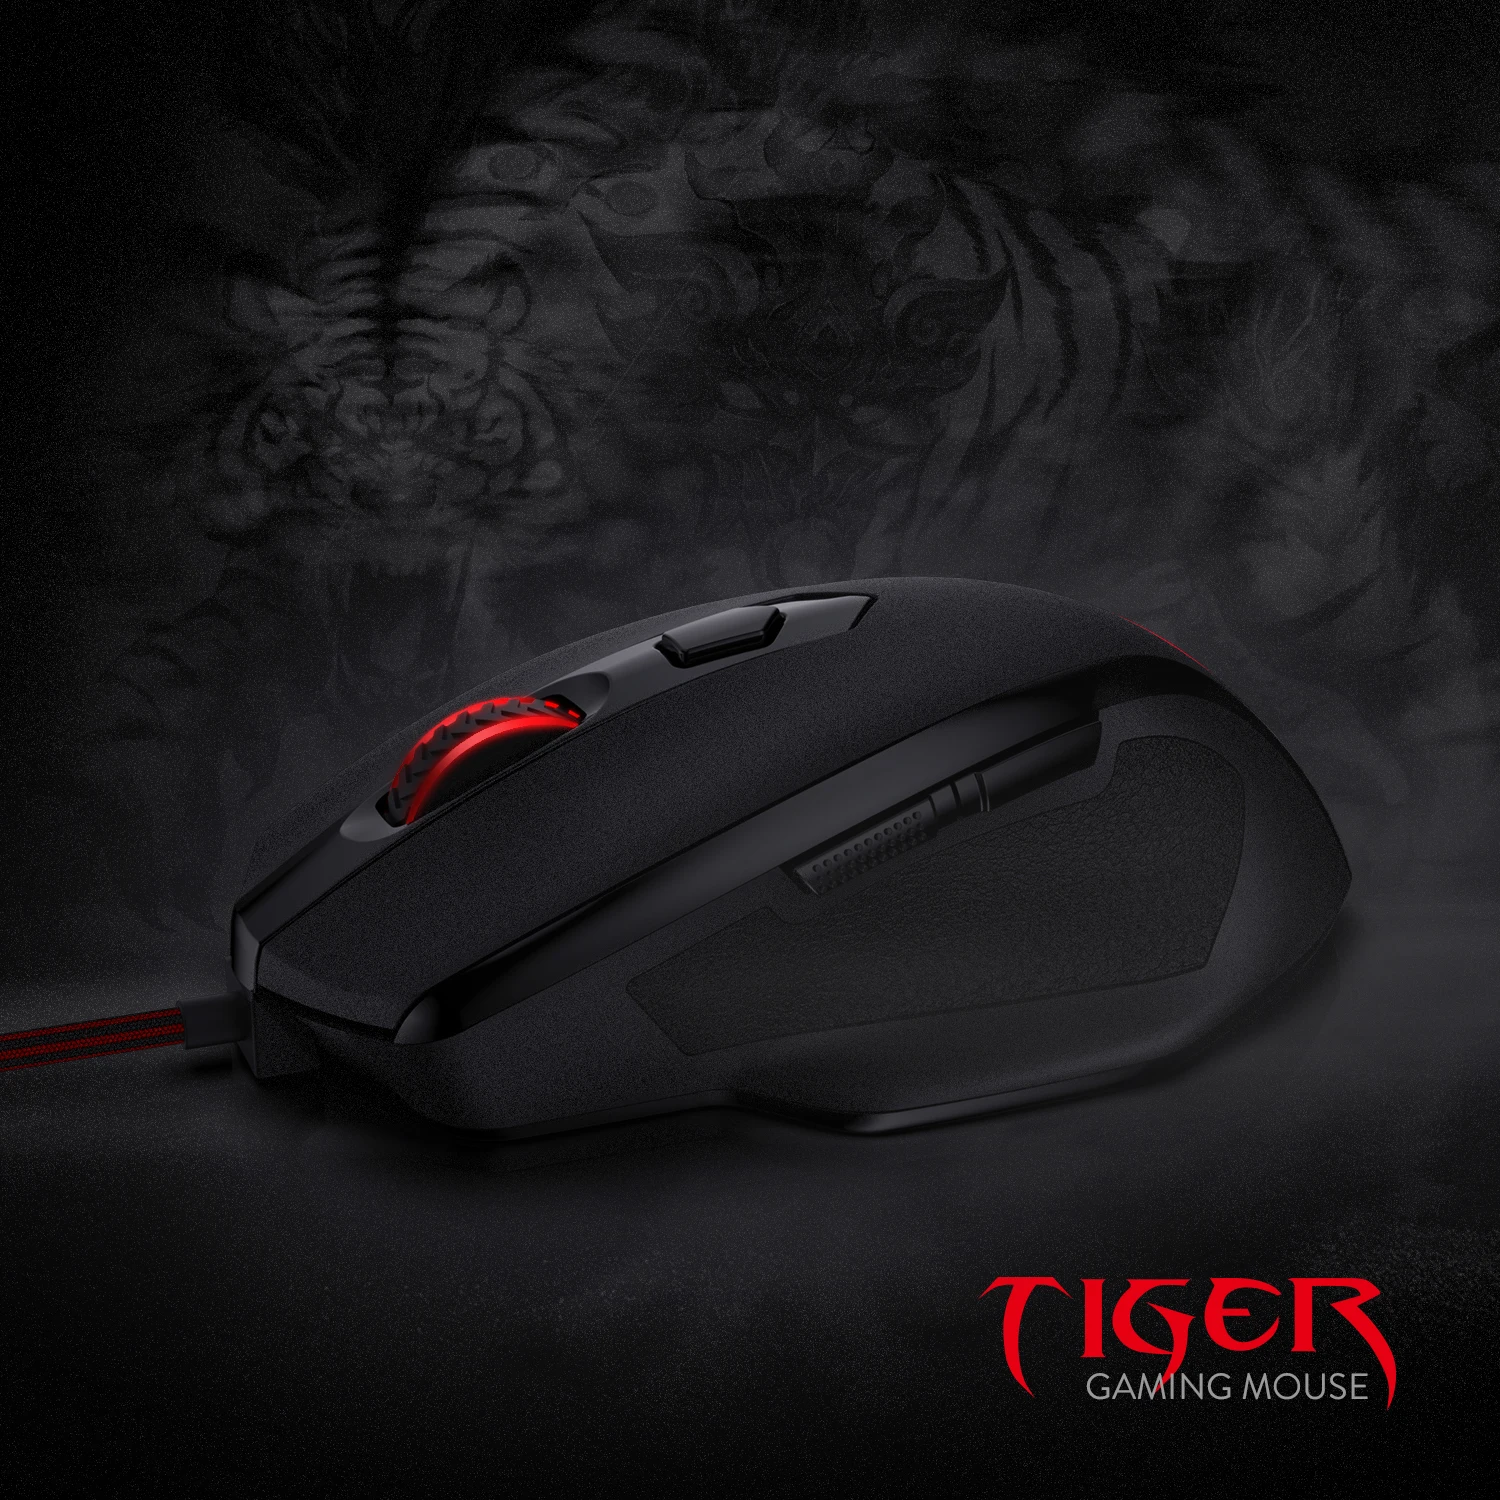 Redragon M709-1 Tiger2 красный игровая мышка со светодиодной подсветкой, 3200 точек/дюйм, проводная оптический геймер Мышь с точности приводом, 5 программируемых кнопок